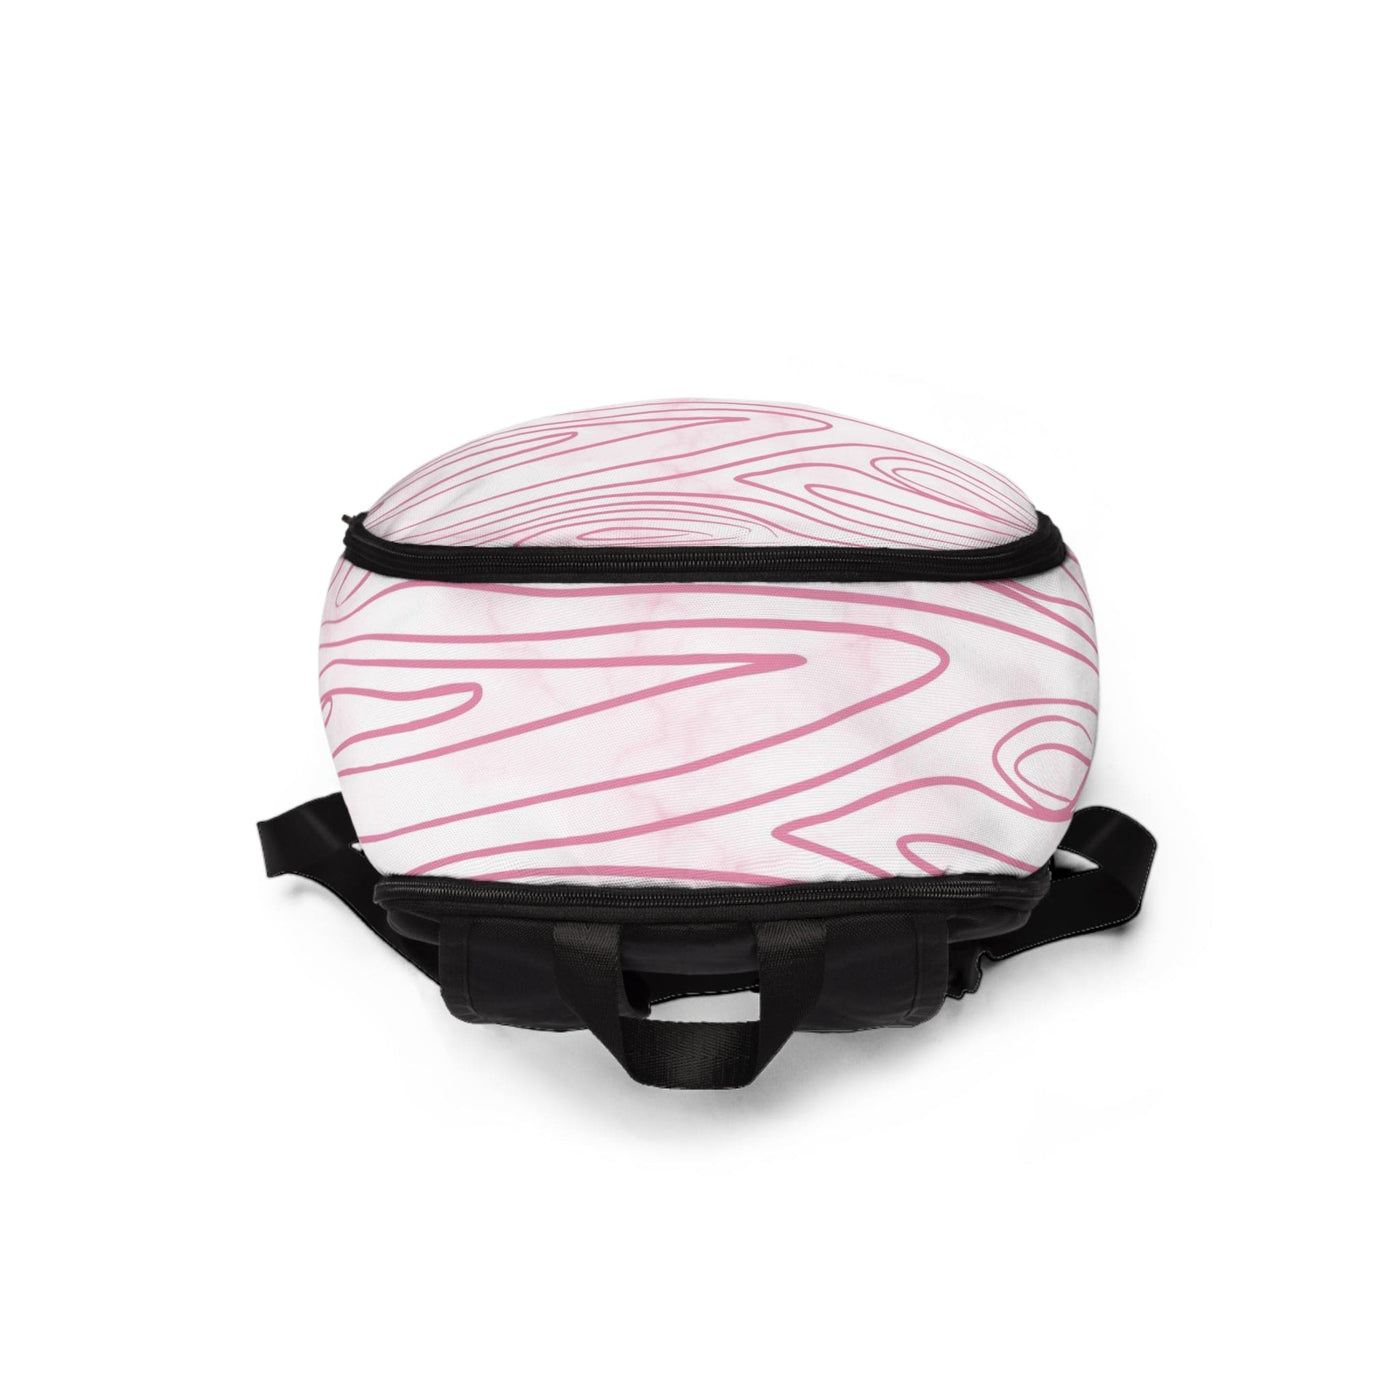 Fashion Backpack Waterproof Pink Line Art Sketch Print - Bags